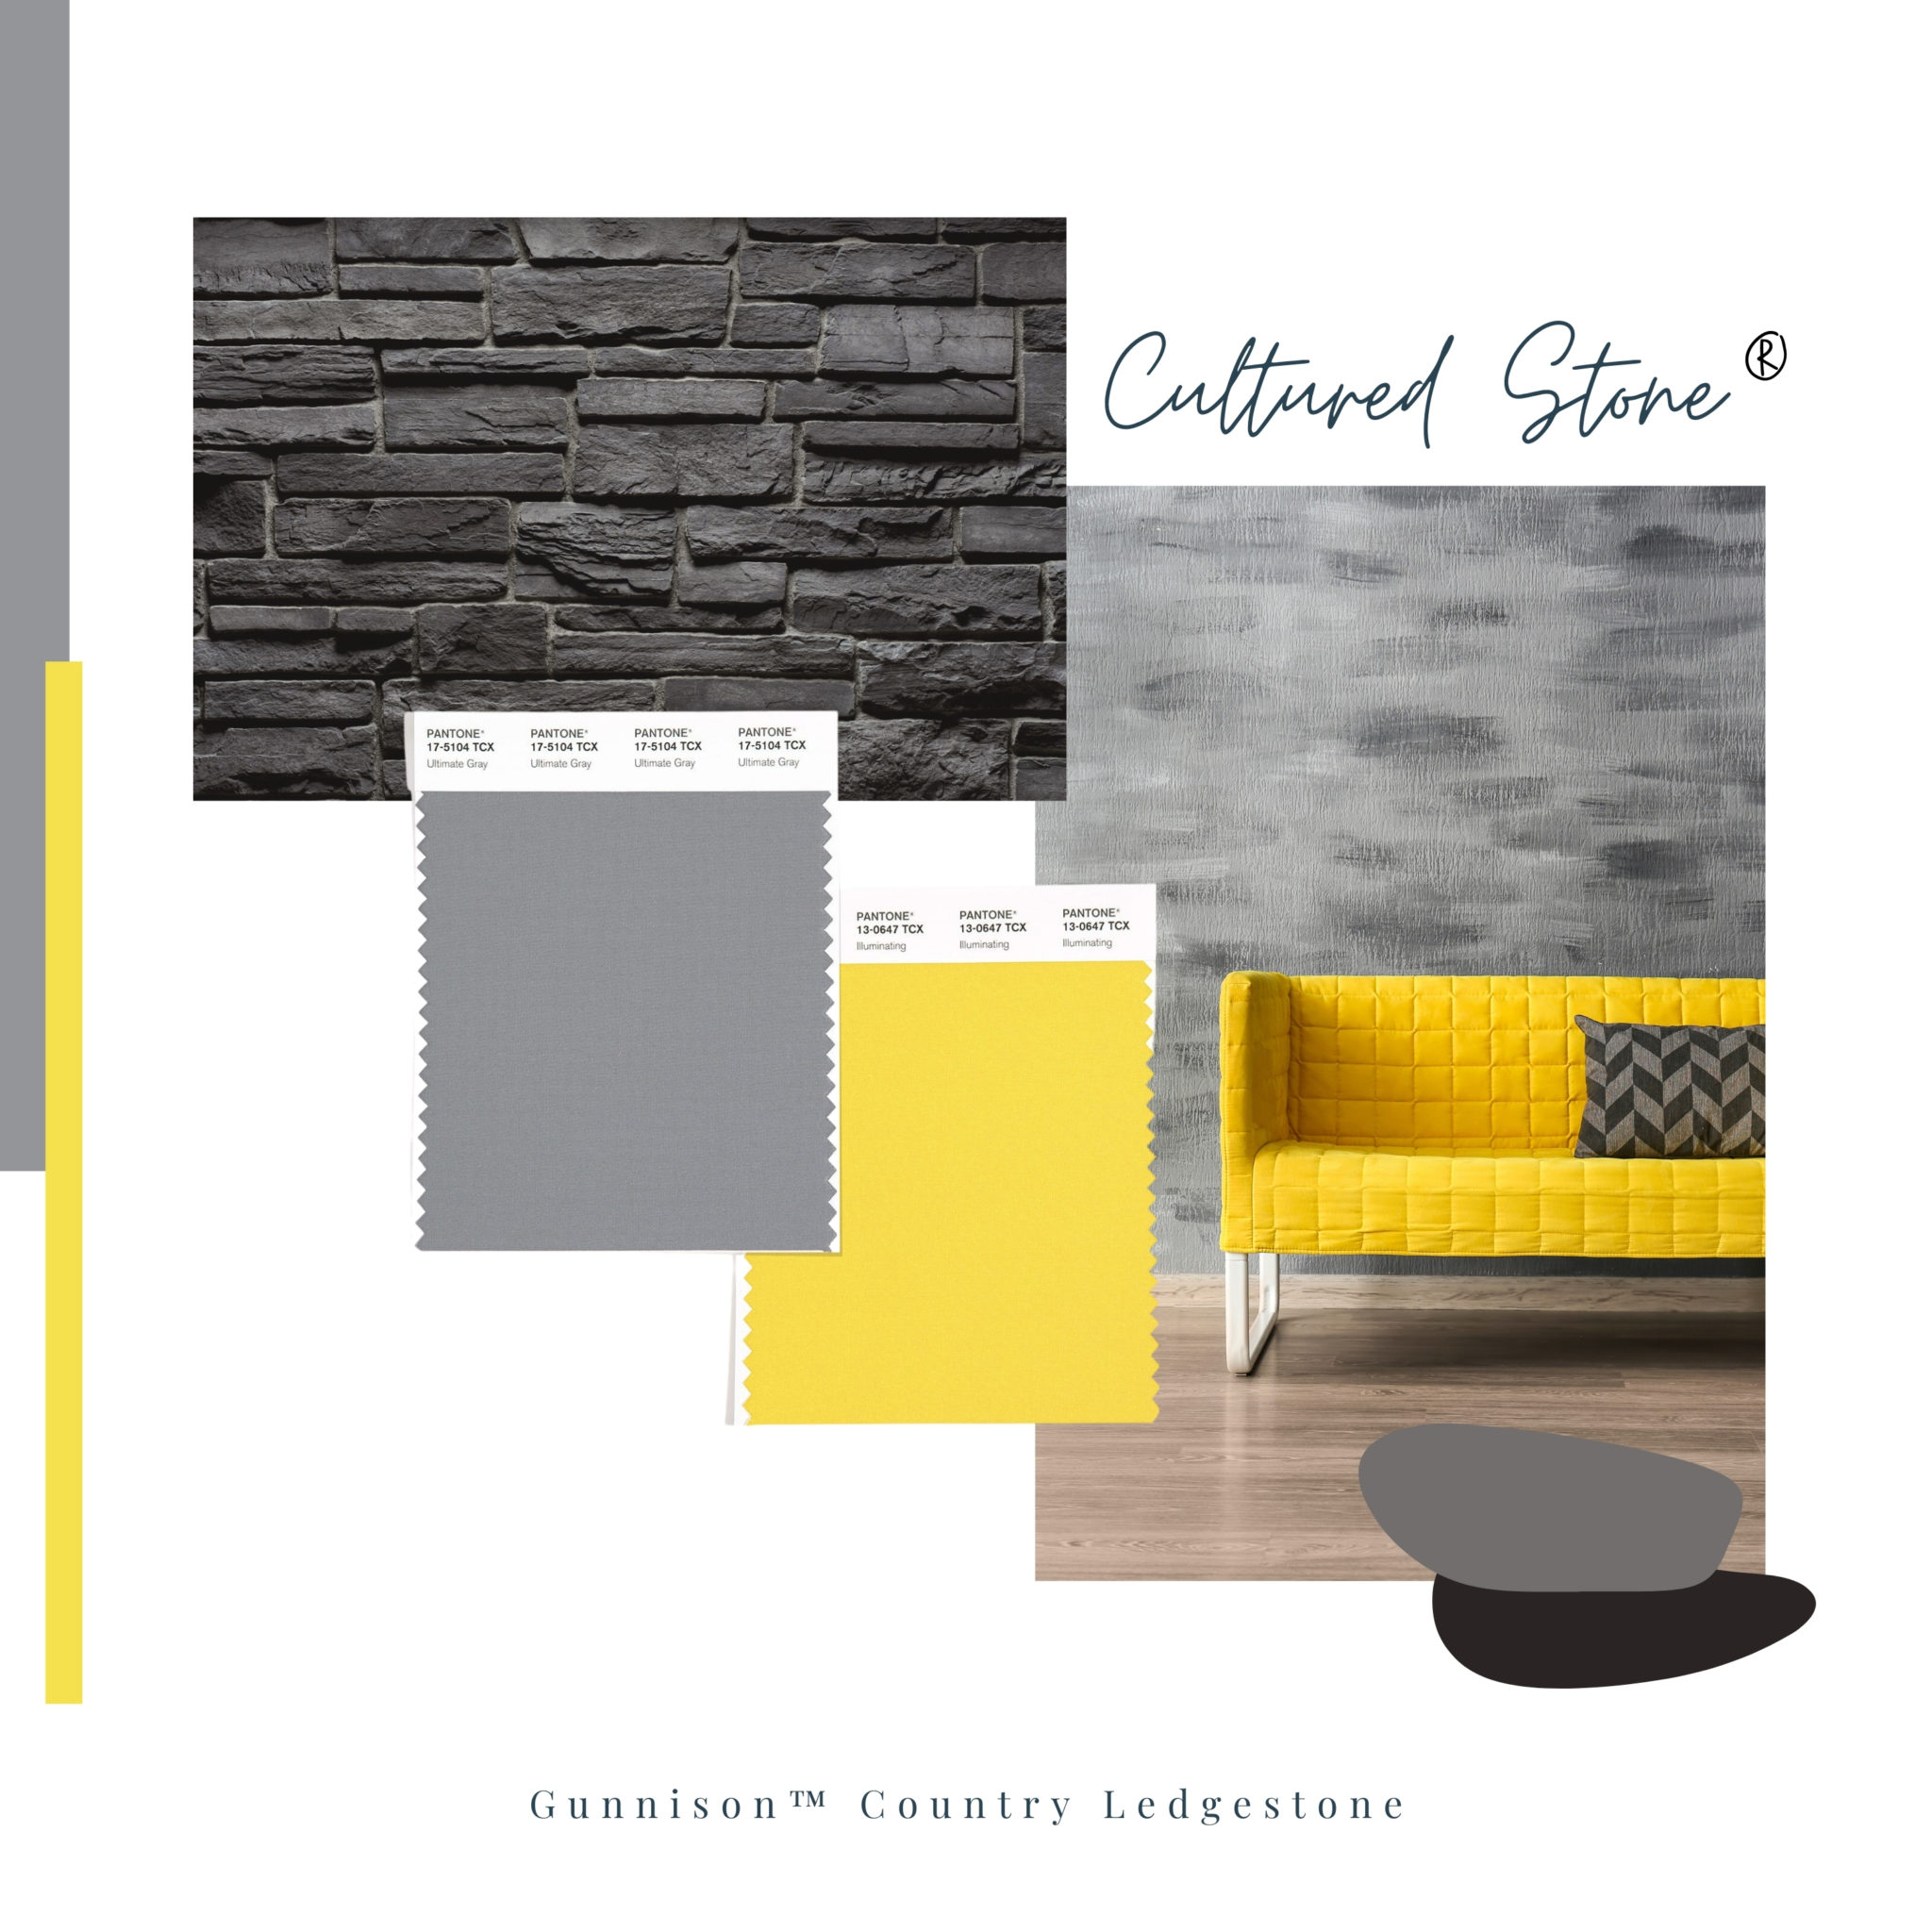 Soyez créatif avec la couleur Pantone de l'année 2021 - Cultured Stone®